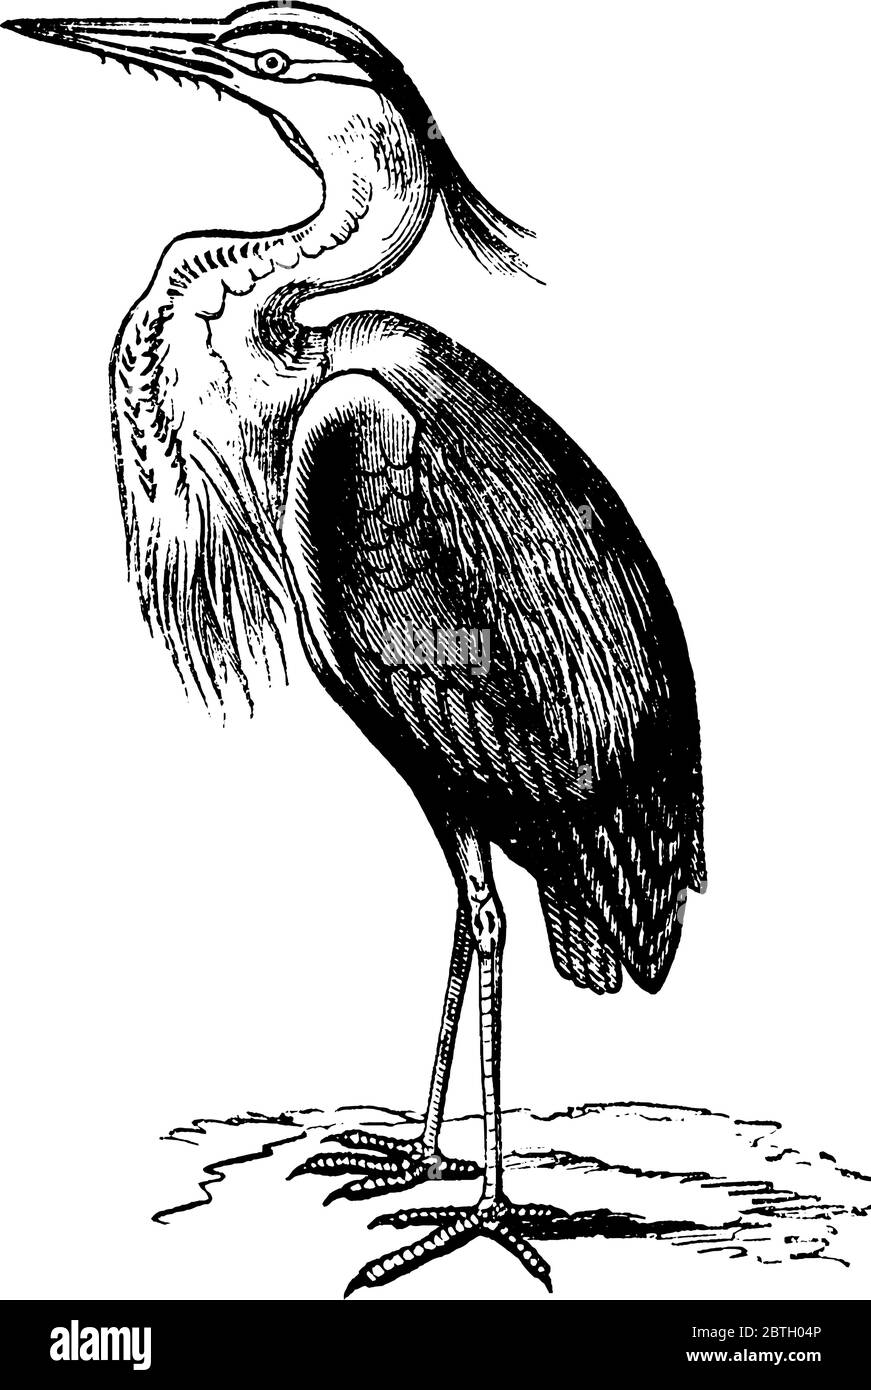 Die Reiher sind langbeinige Süß- und Küstenvögel in der Familie Ardeidae, Vintage-Strichzeichnung oder Gravur Illustration. Stock Vektor